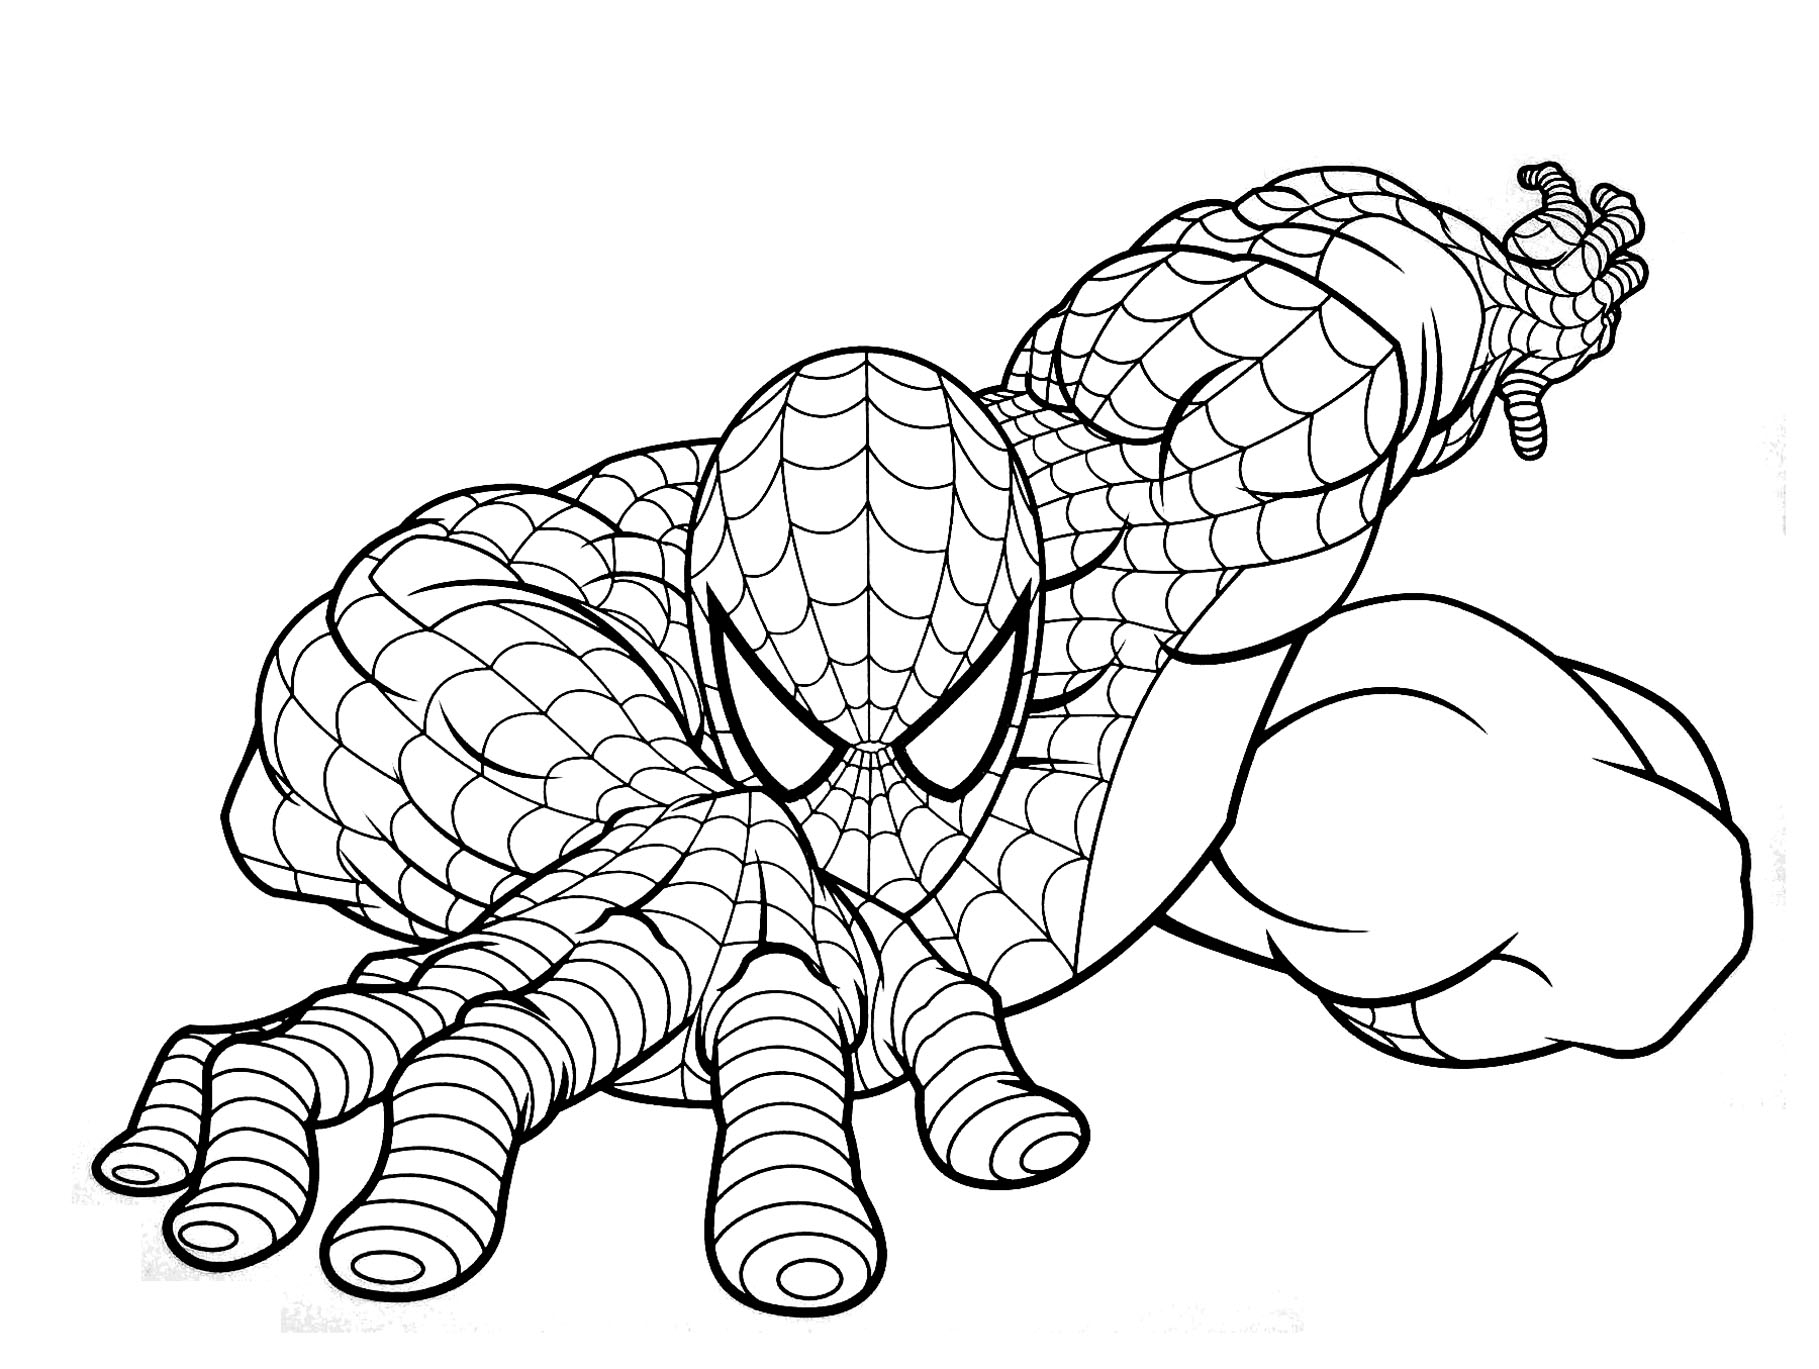 Dessin De Spiderman Gratuit À Imprimer Et Colorier - Coloriage Spider destiné Dessin De Spiderman A Imprimer